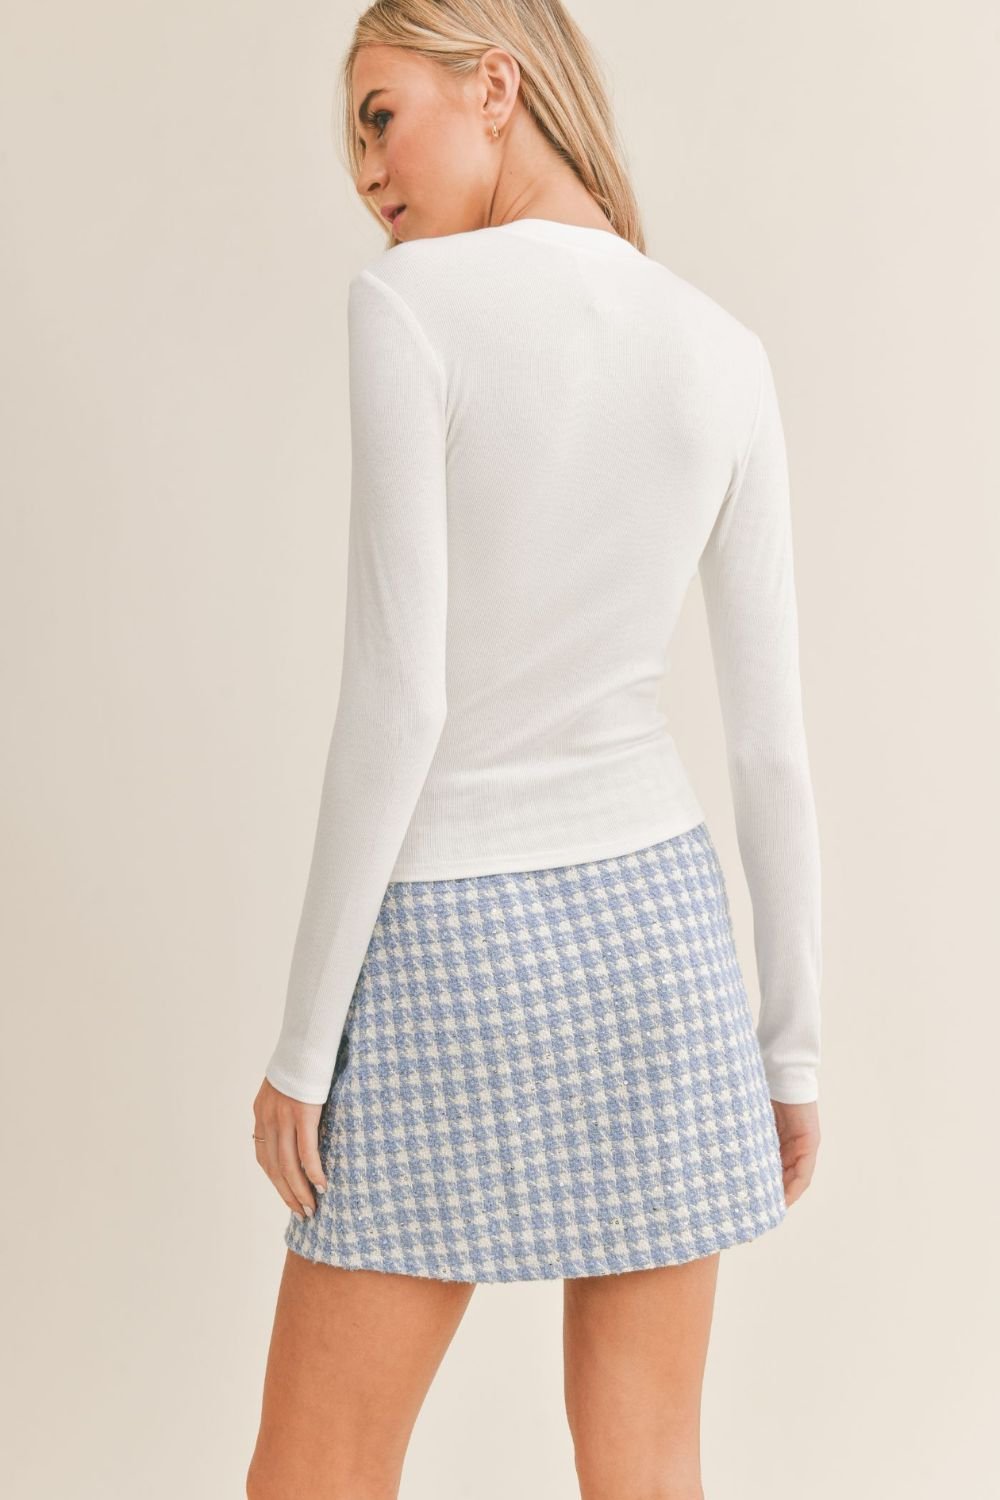 Women's Crewneck Long Sleeve Basic Top | Sadie & Sage | White - Women's Shirts & Tops - Blooming Daily